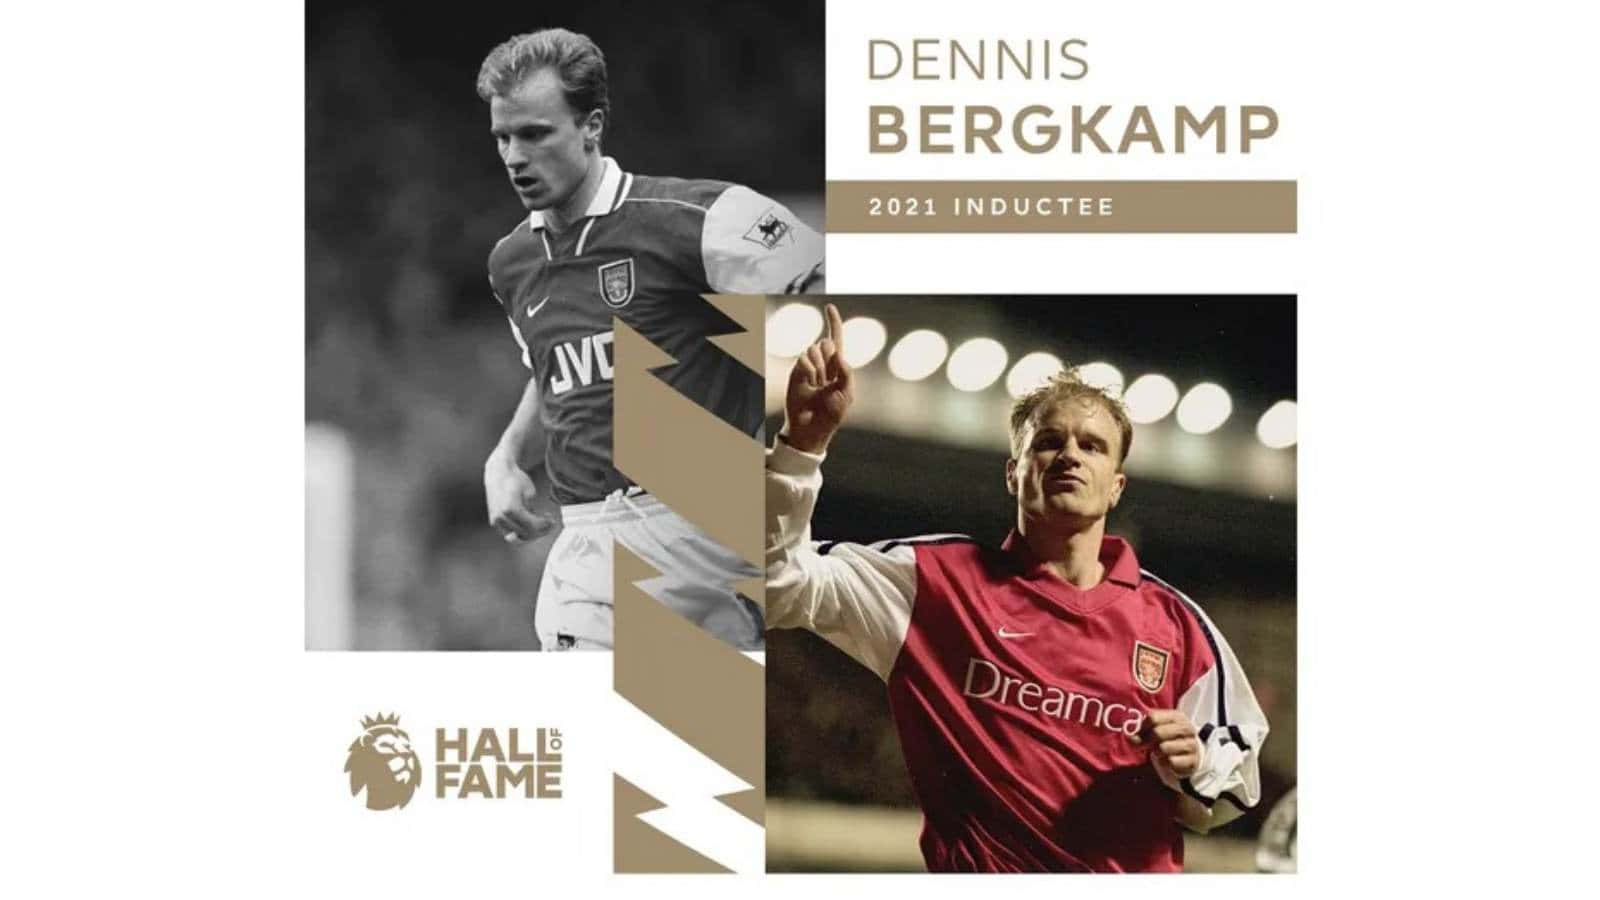 Dennisbergkamp Wurde In Die Premier League Hall Of Fame Aufgenommen. Wallpaper